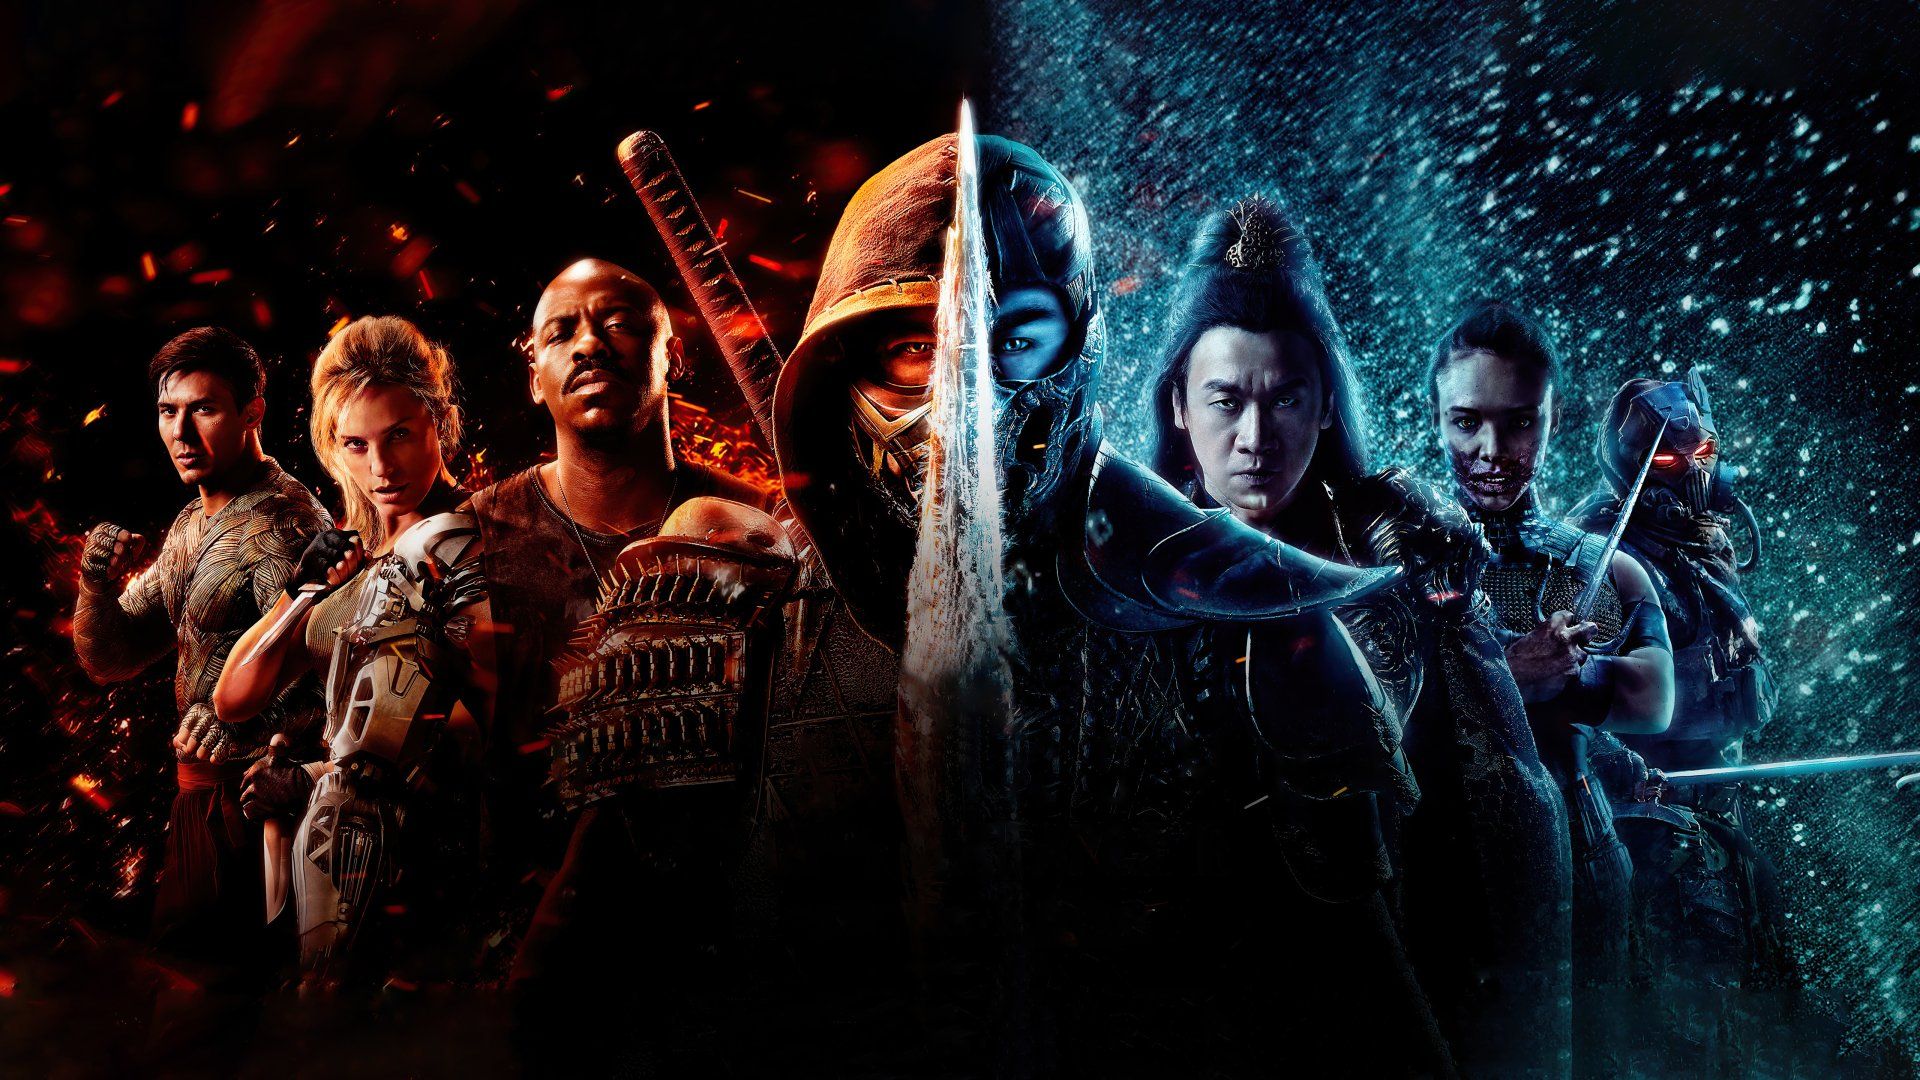 Mortal Kombat - Tudo o que esperava de um filme sobre um jogo de vídeo game  - Parágrafo 2